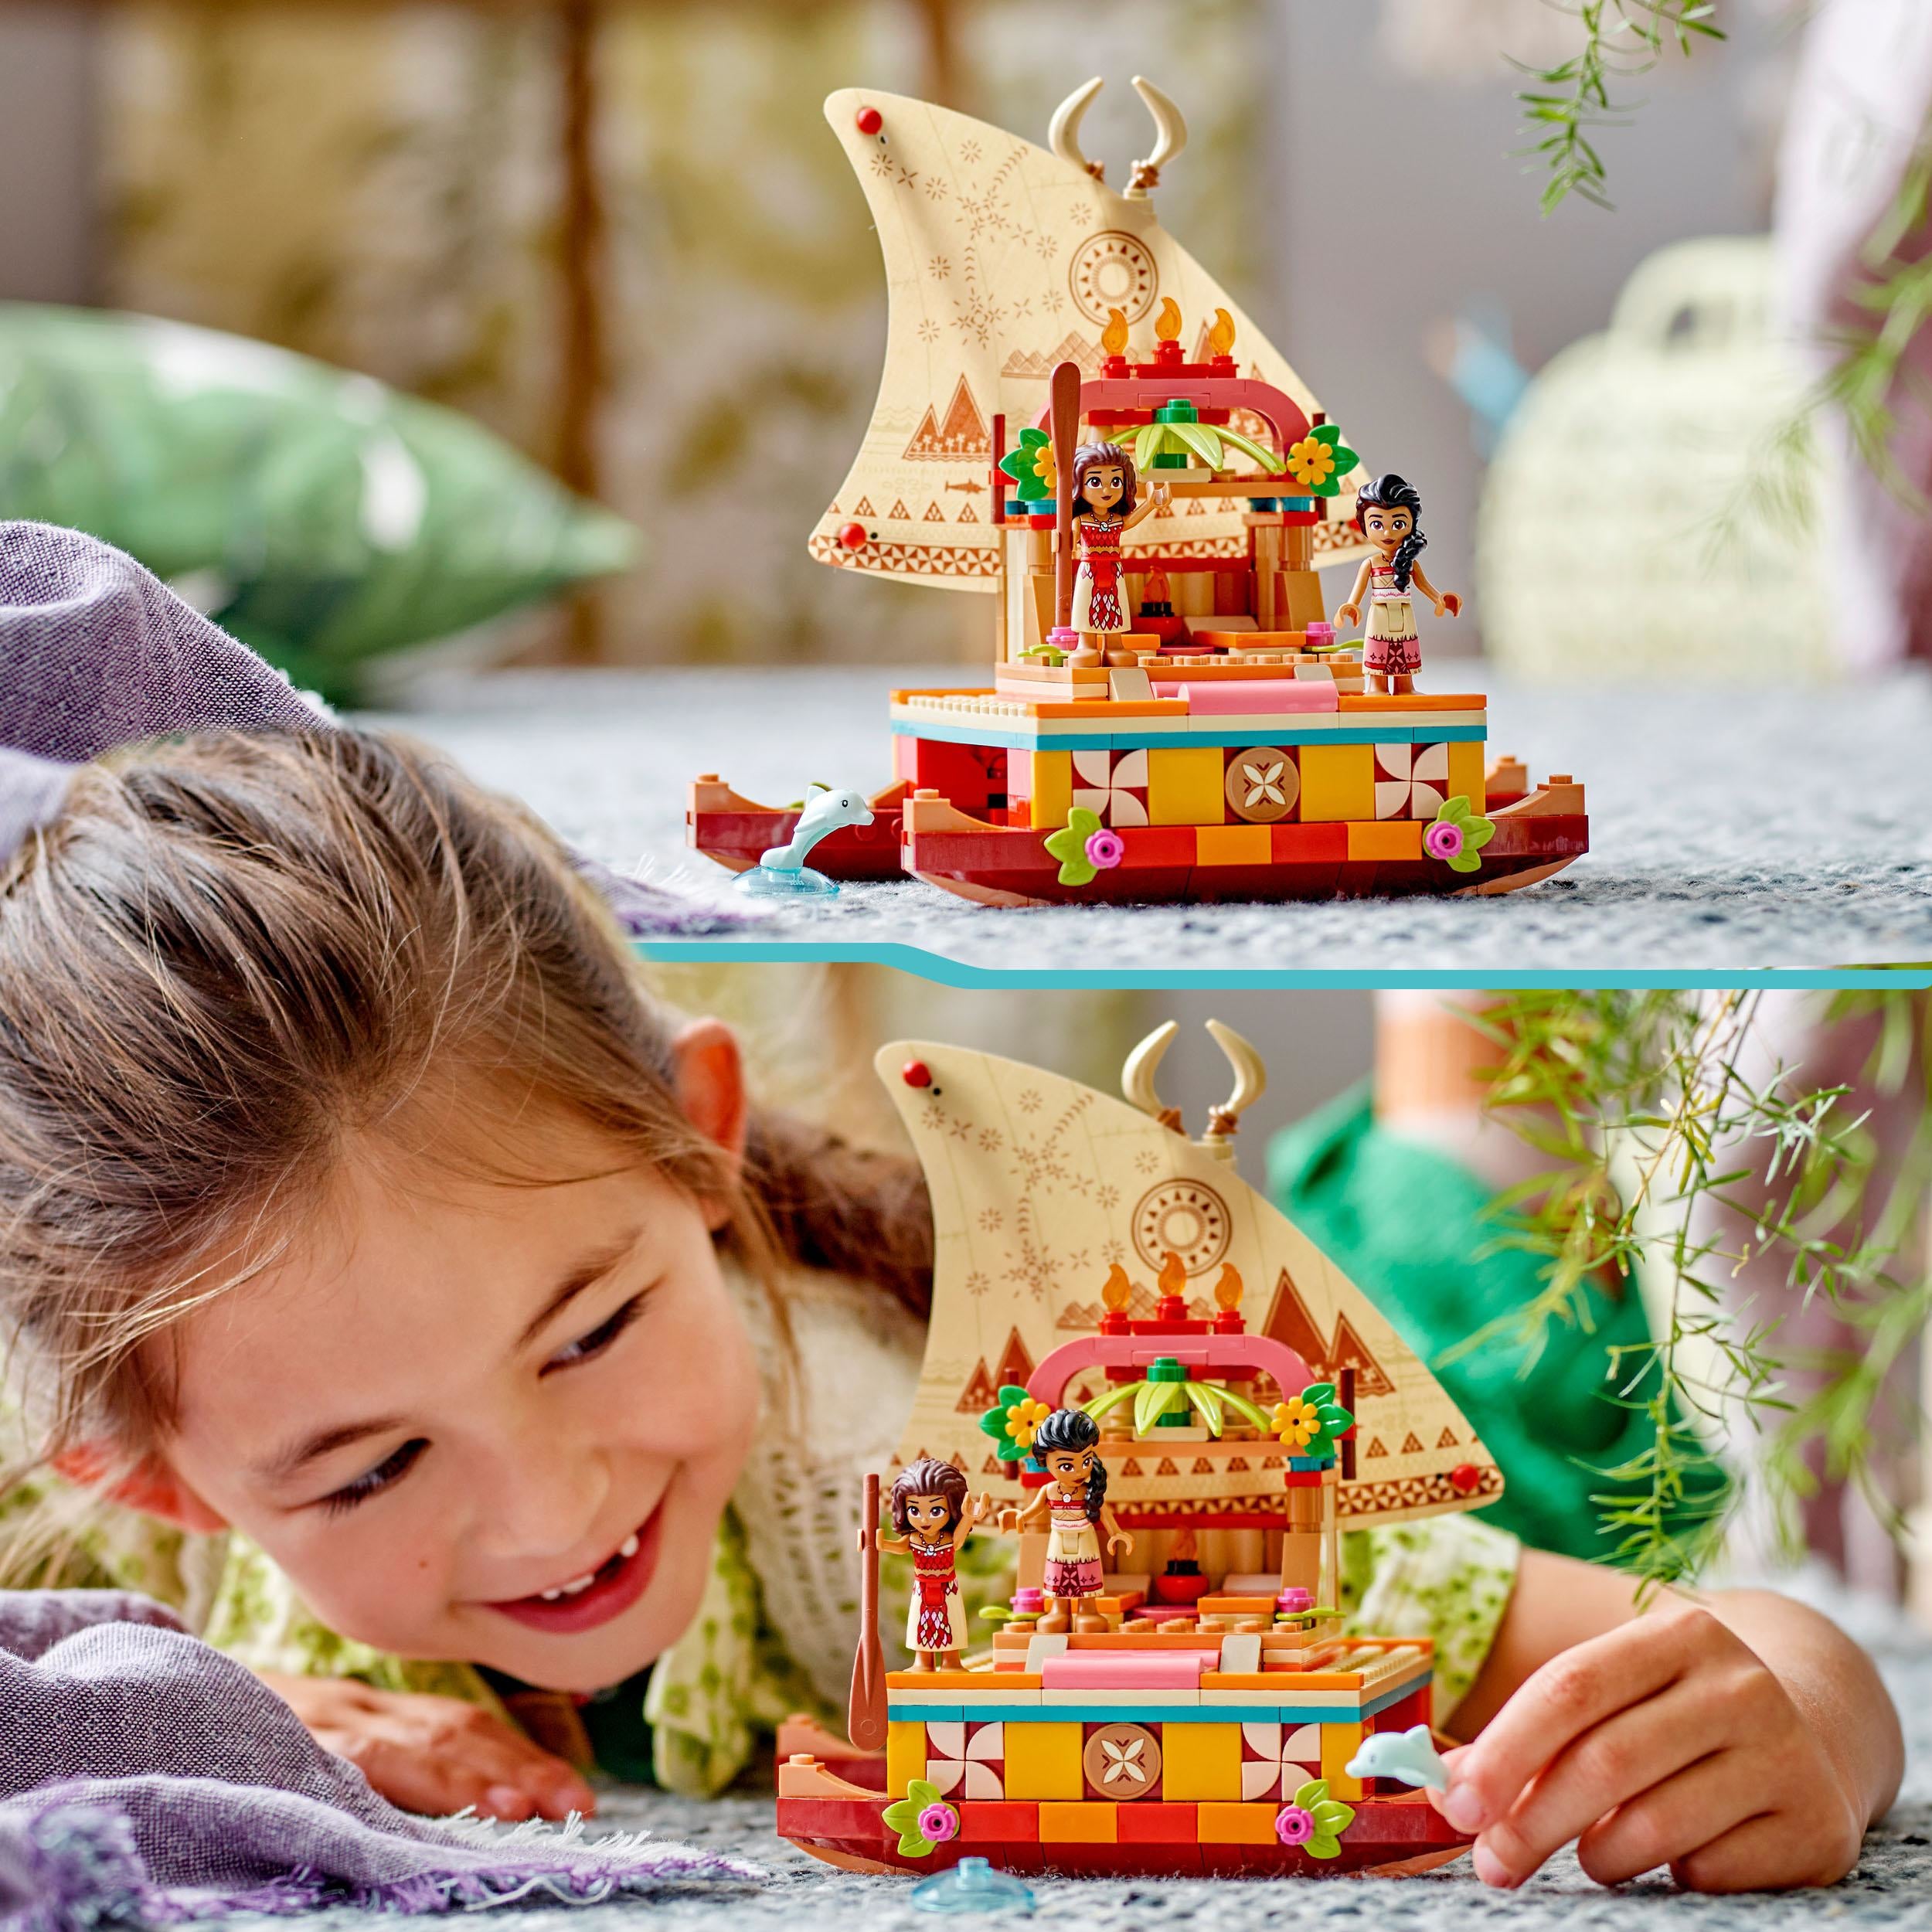 43210 LEGO Disney Princess - La barca a vela di Vaiana